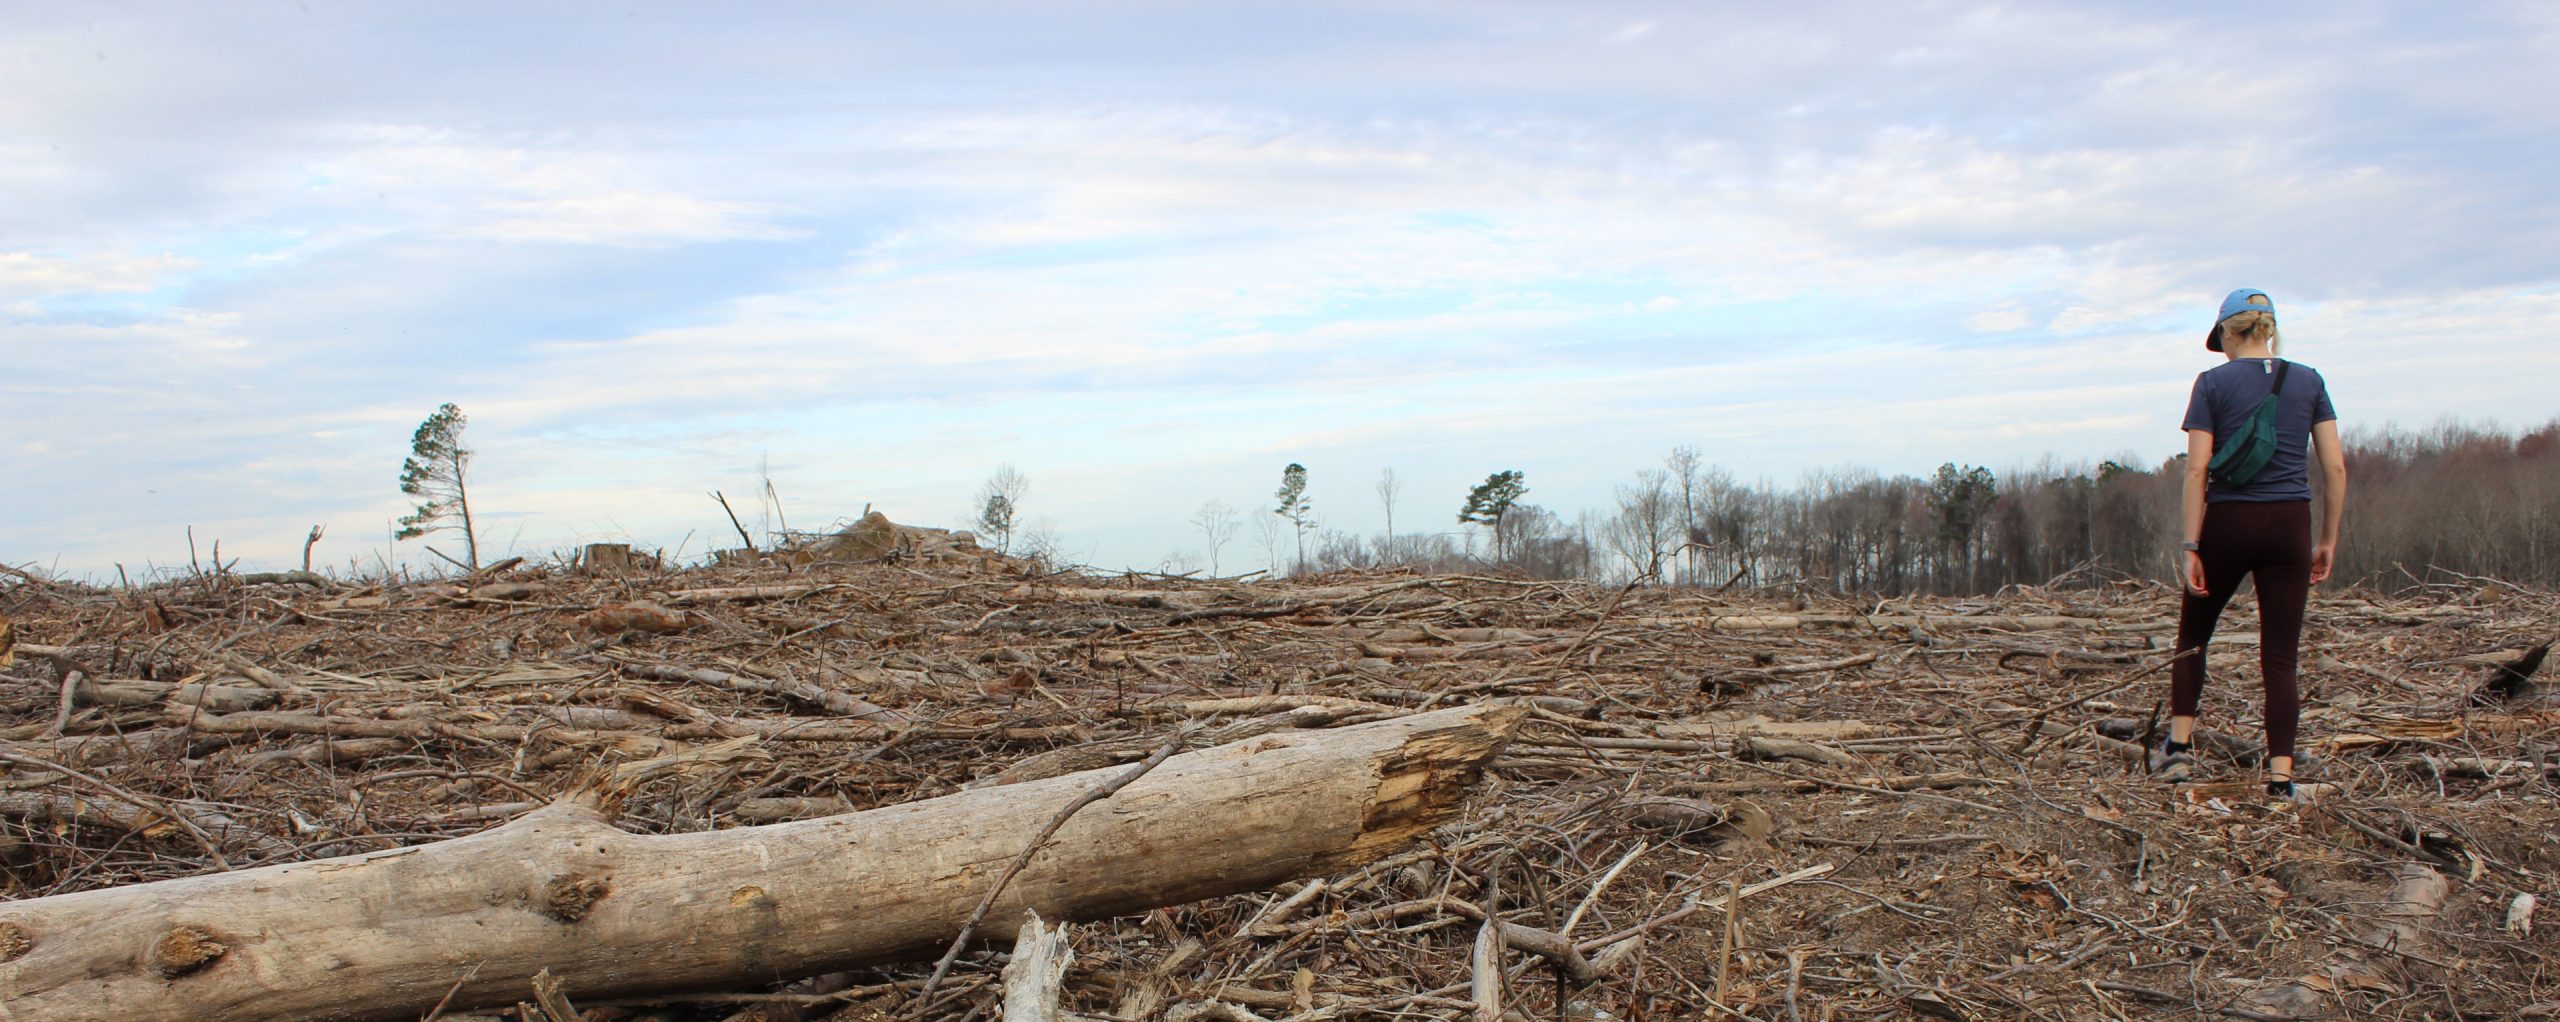 biomass-logging-clearcut-site-rita-frost